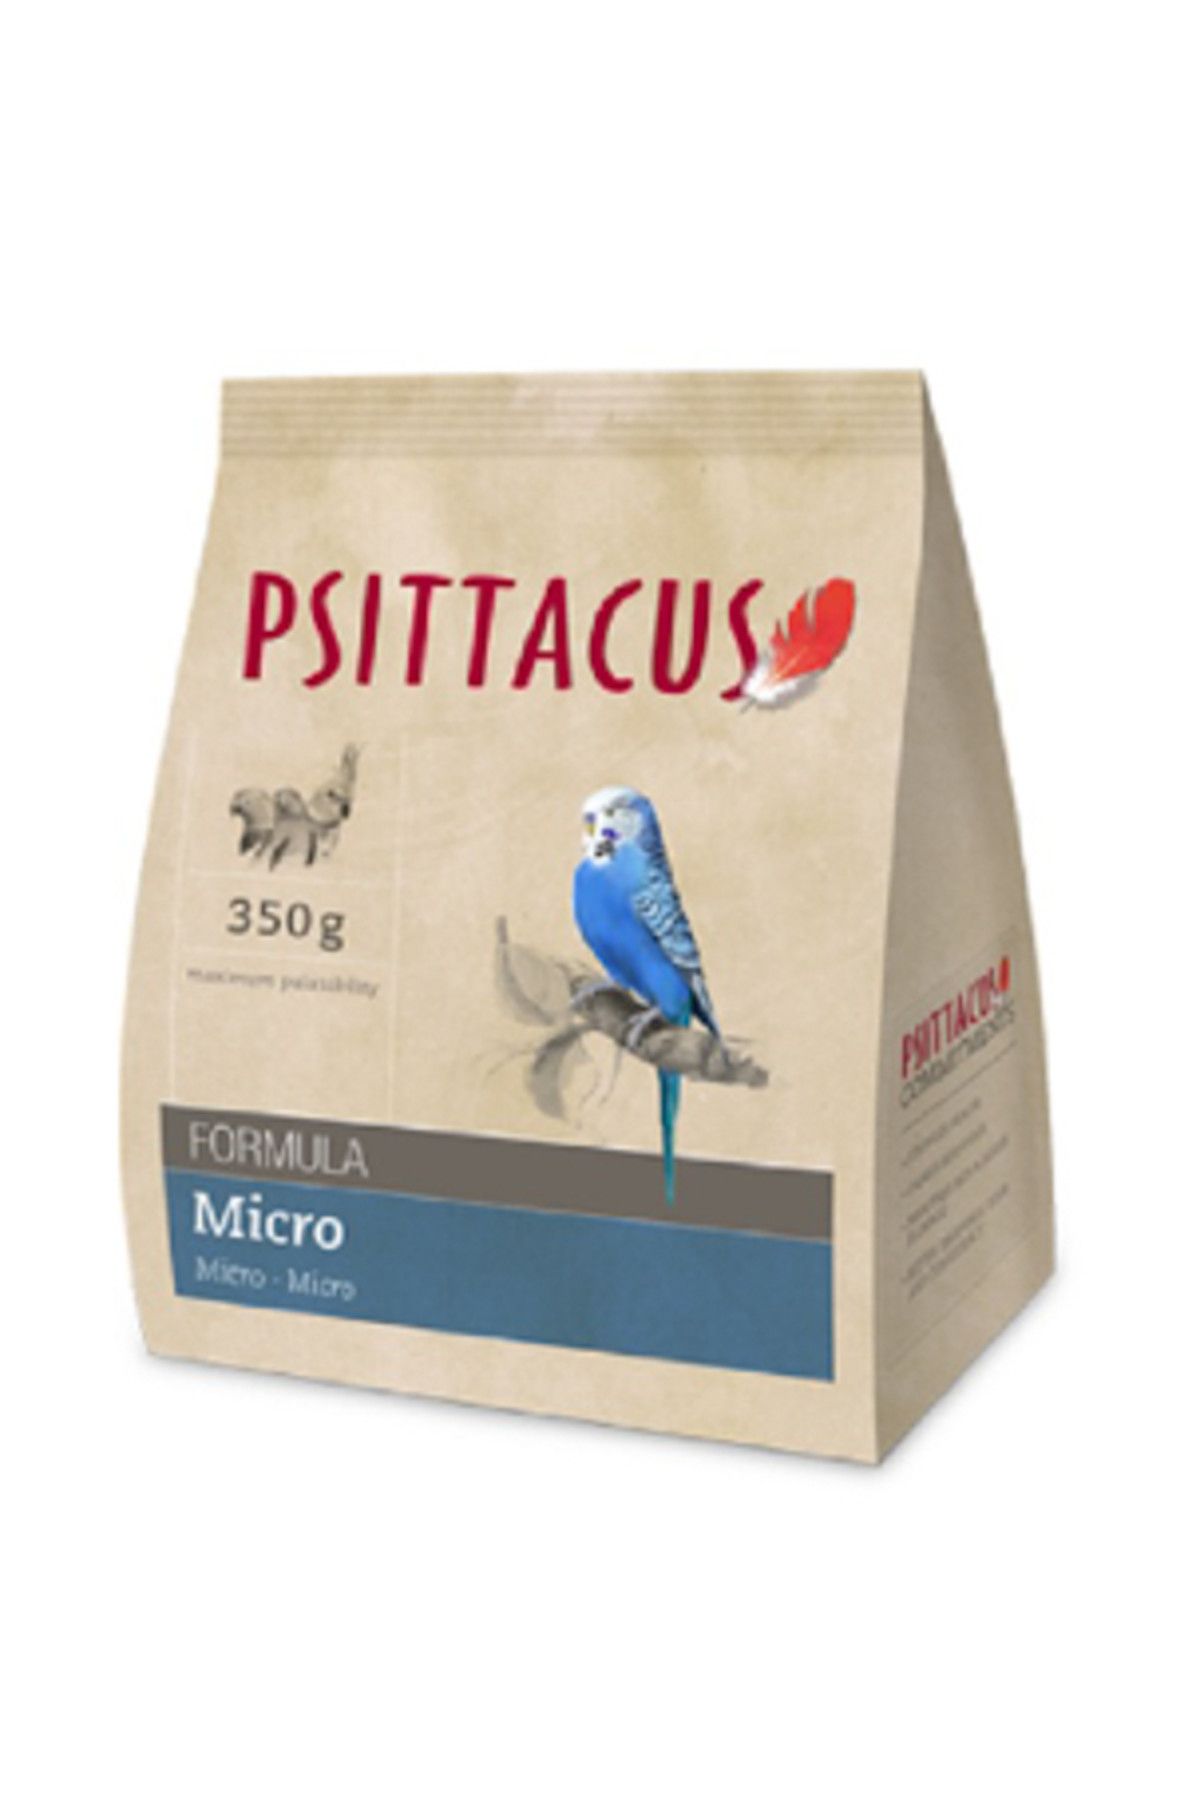 Psittacus Micro Formula Pellet Haline Getirilmiş Özel Muhabbet Yemi 350 gr